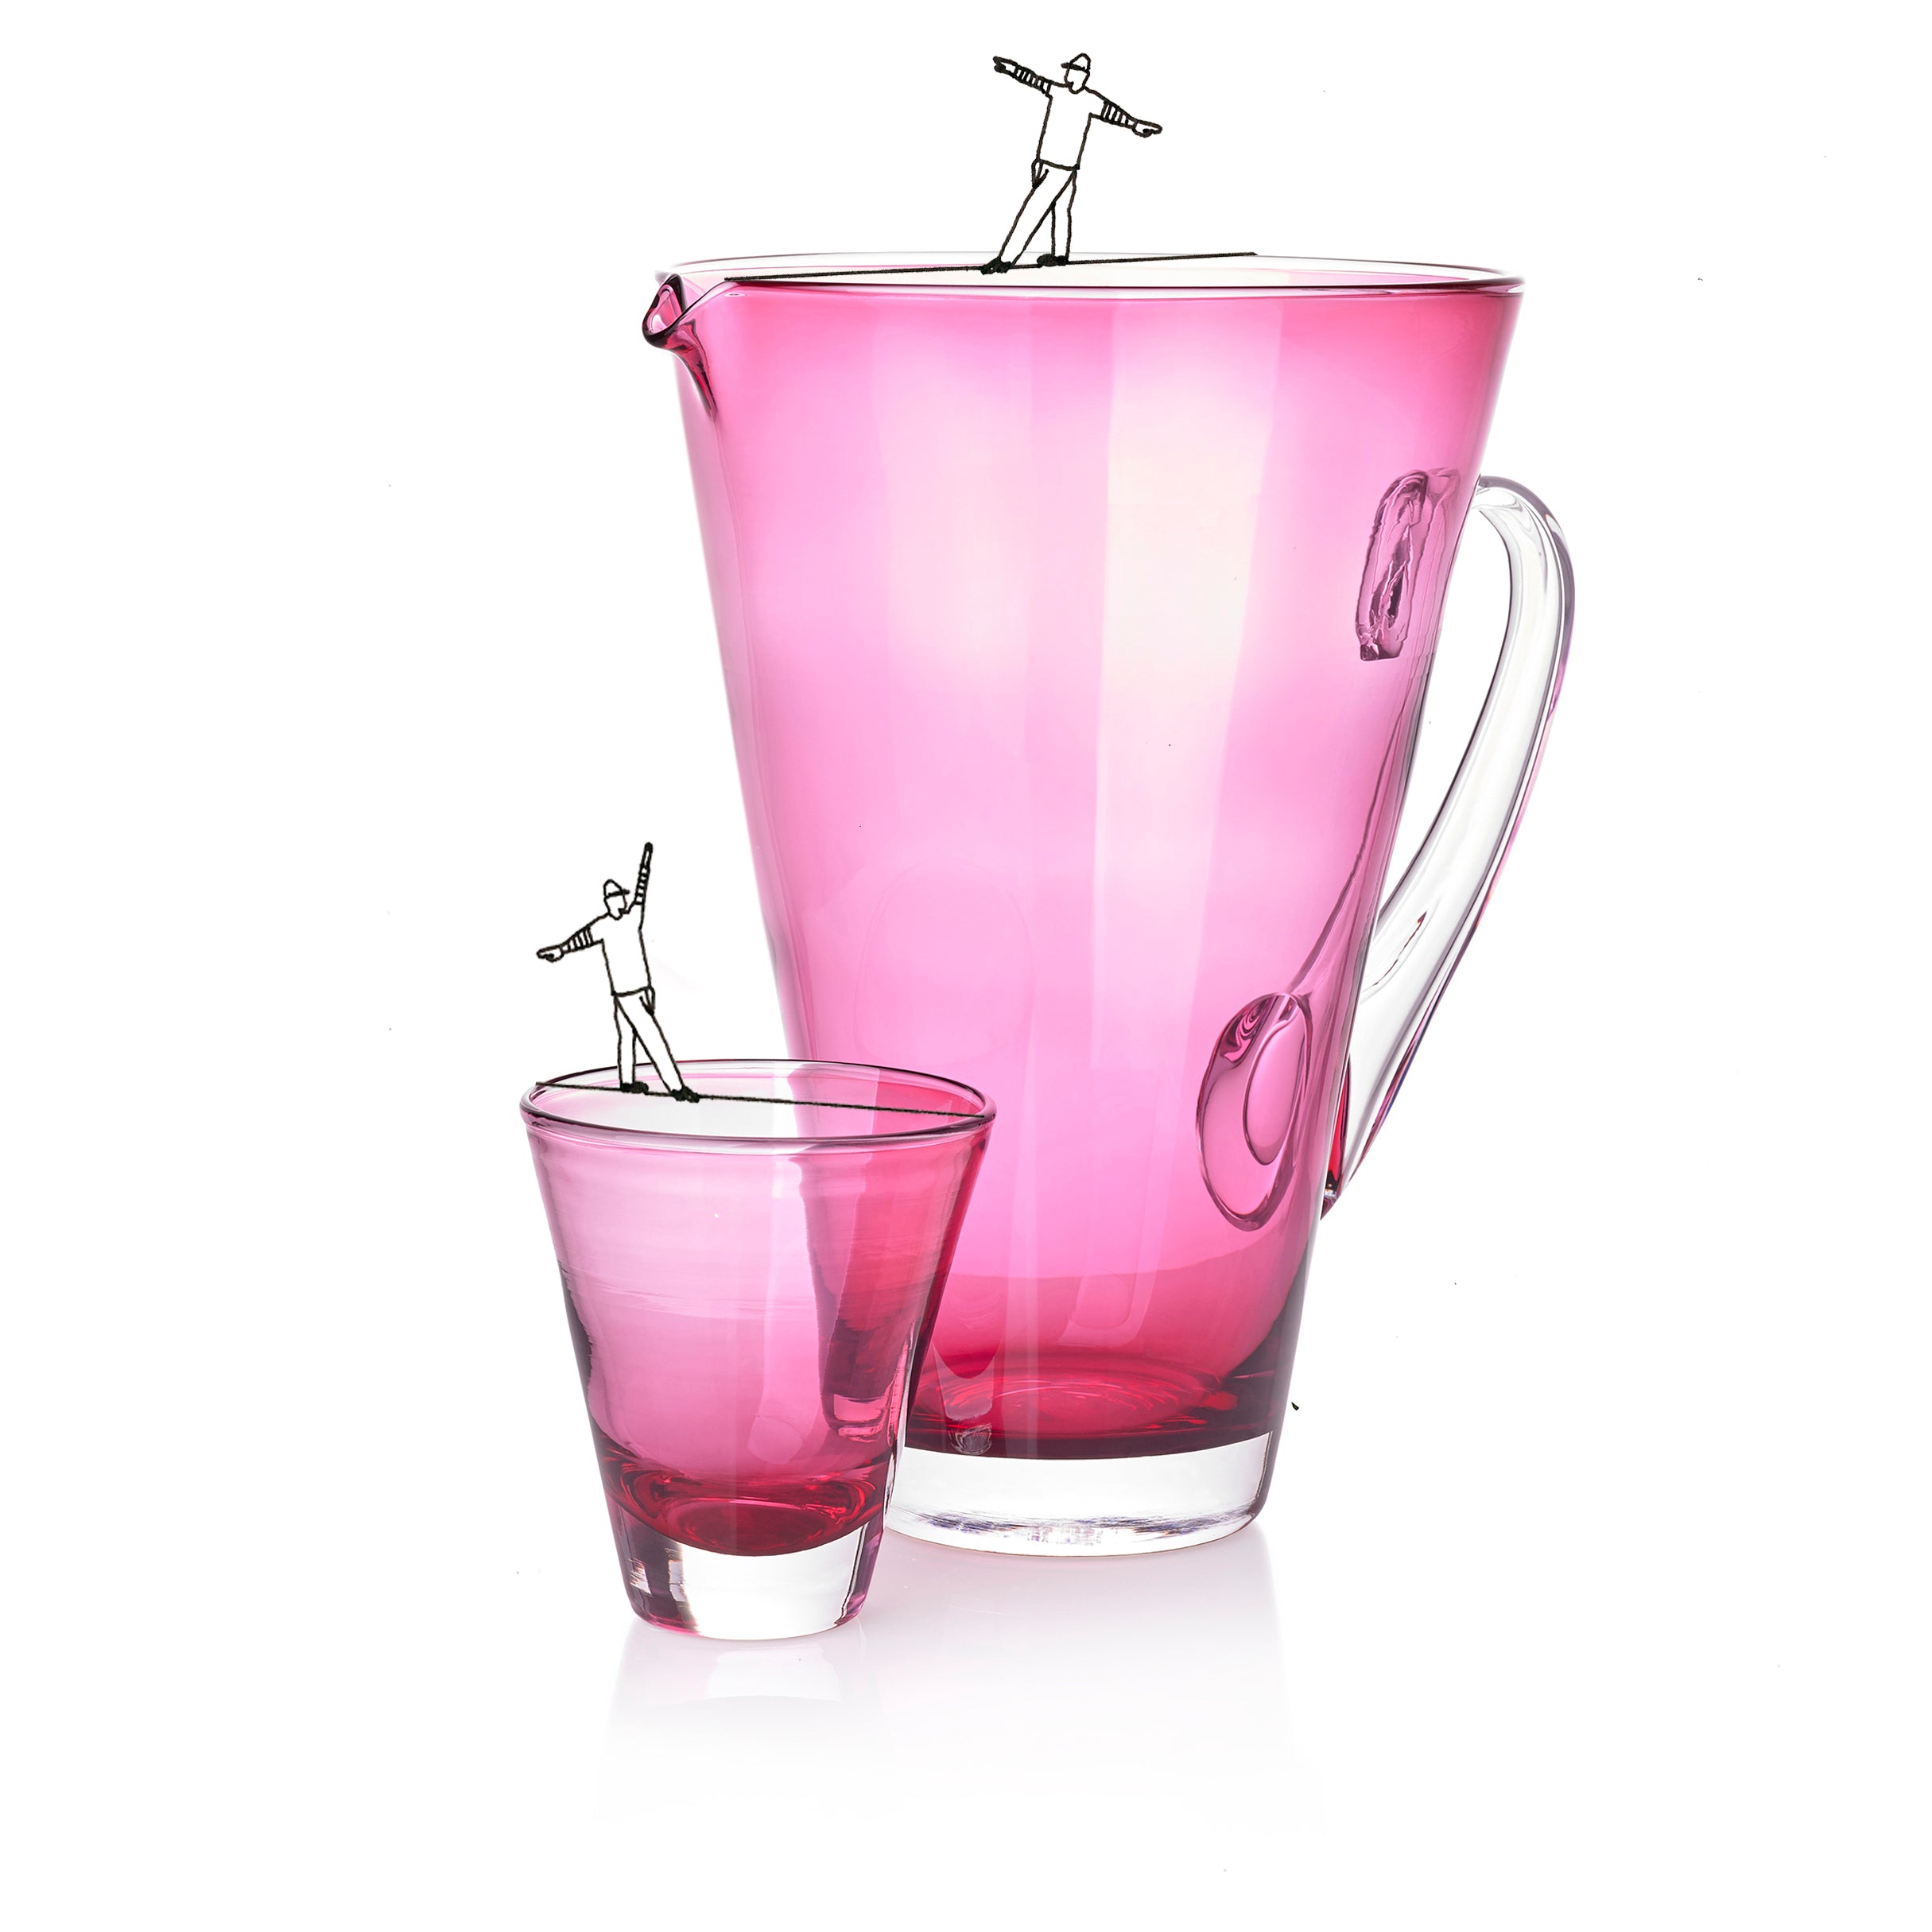 Handblown Glass Clair Jug in Fuchsia Pink, 23cm